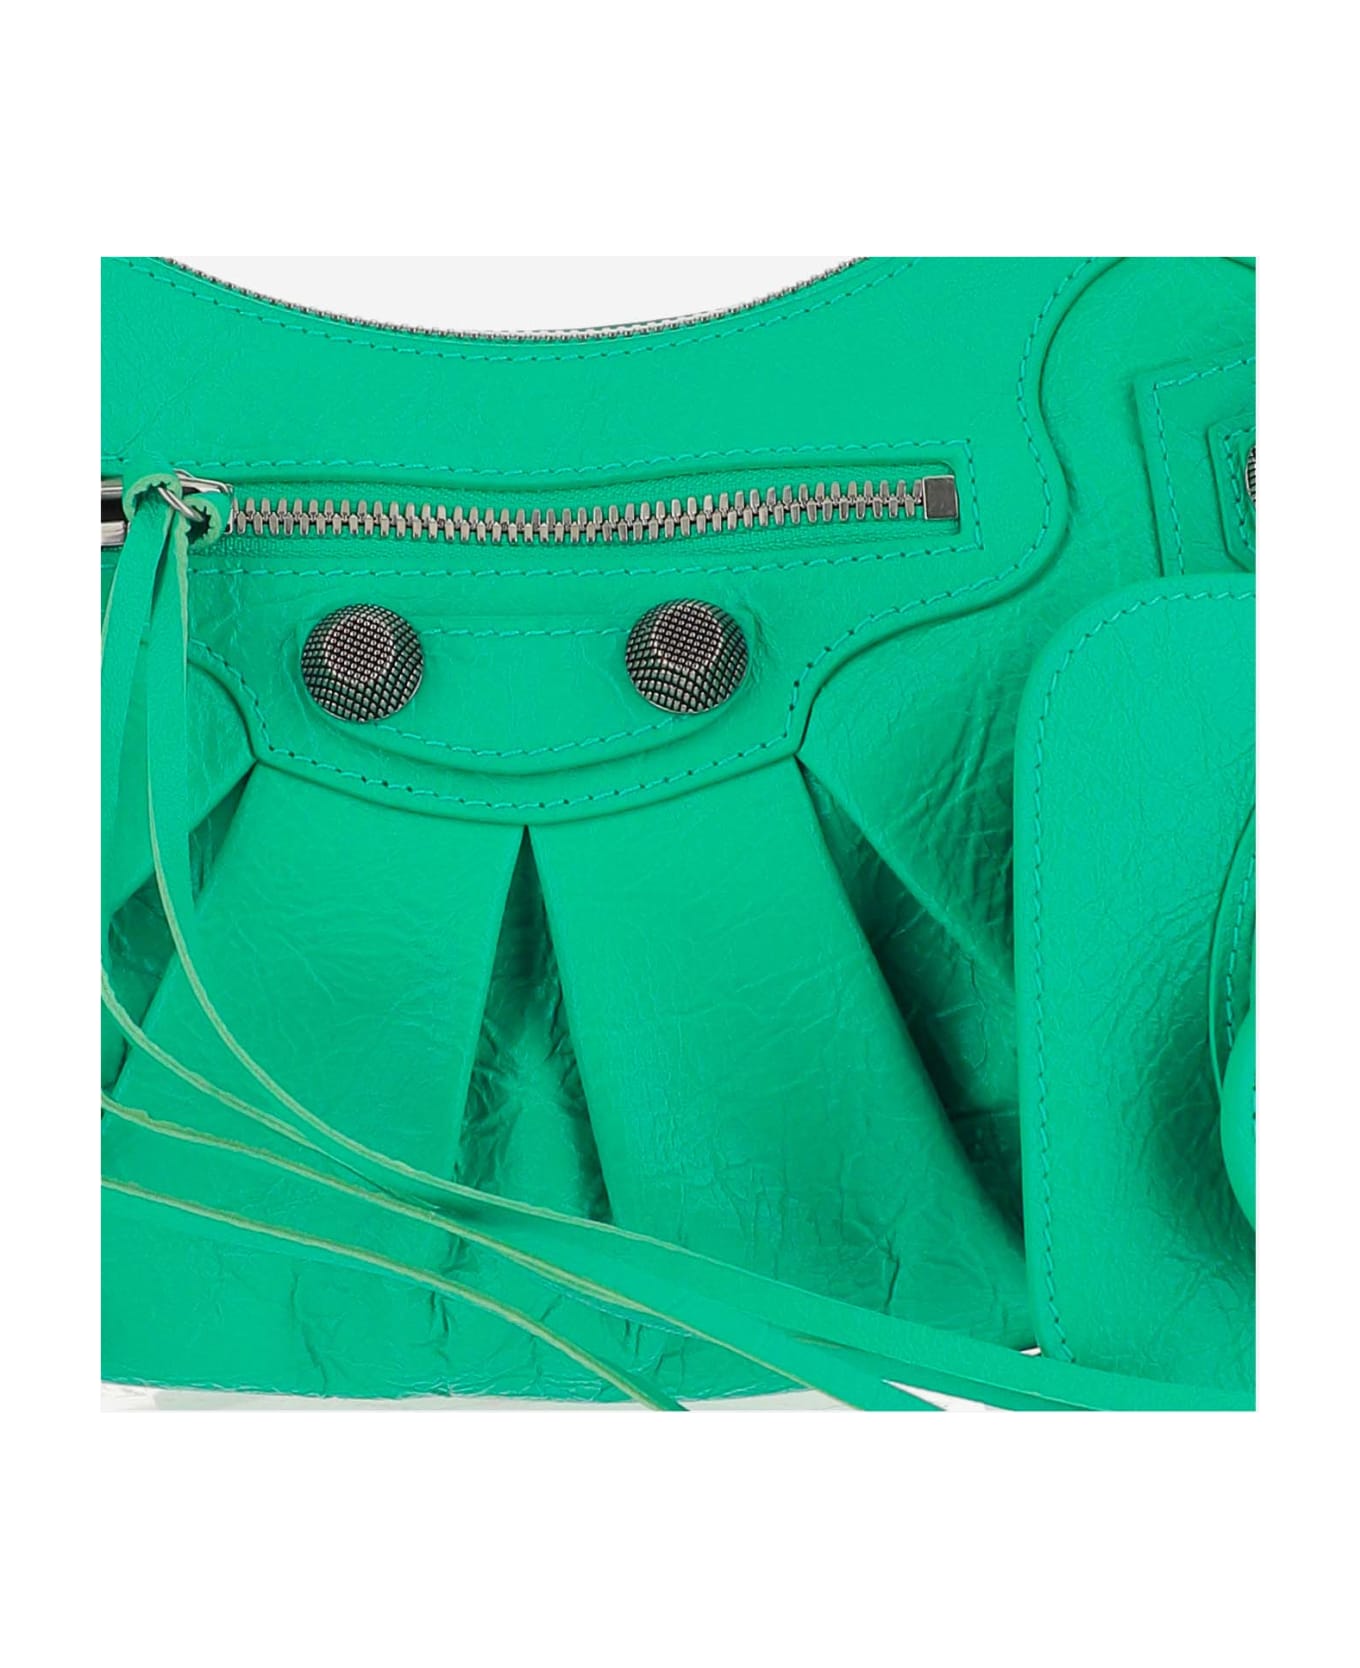 Balenciaga Le Cagole Leather Cross-body Bag - Green トートバッグ